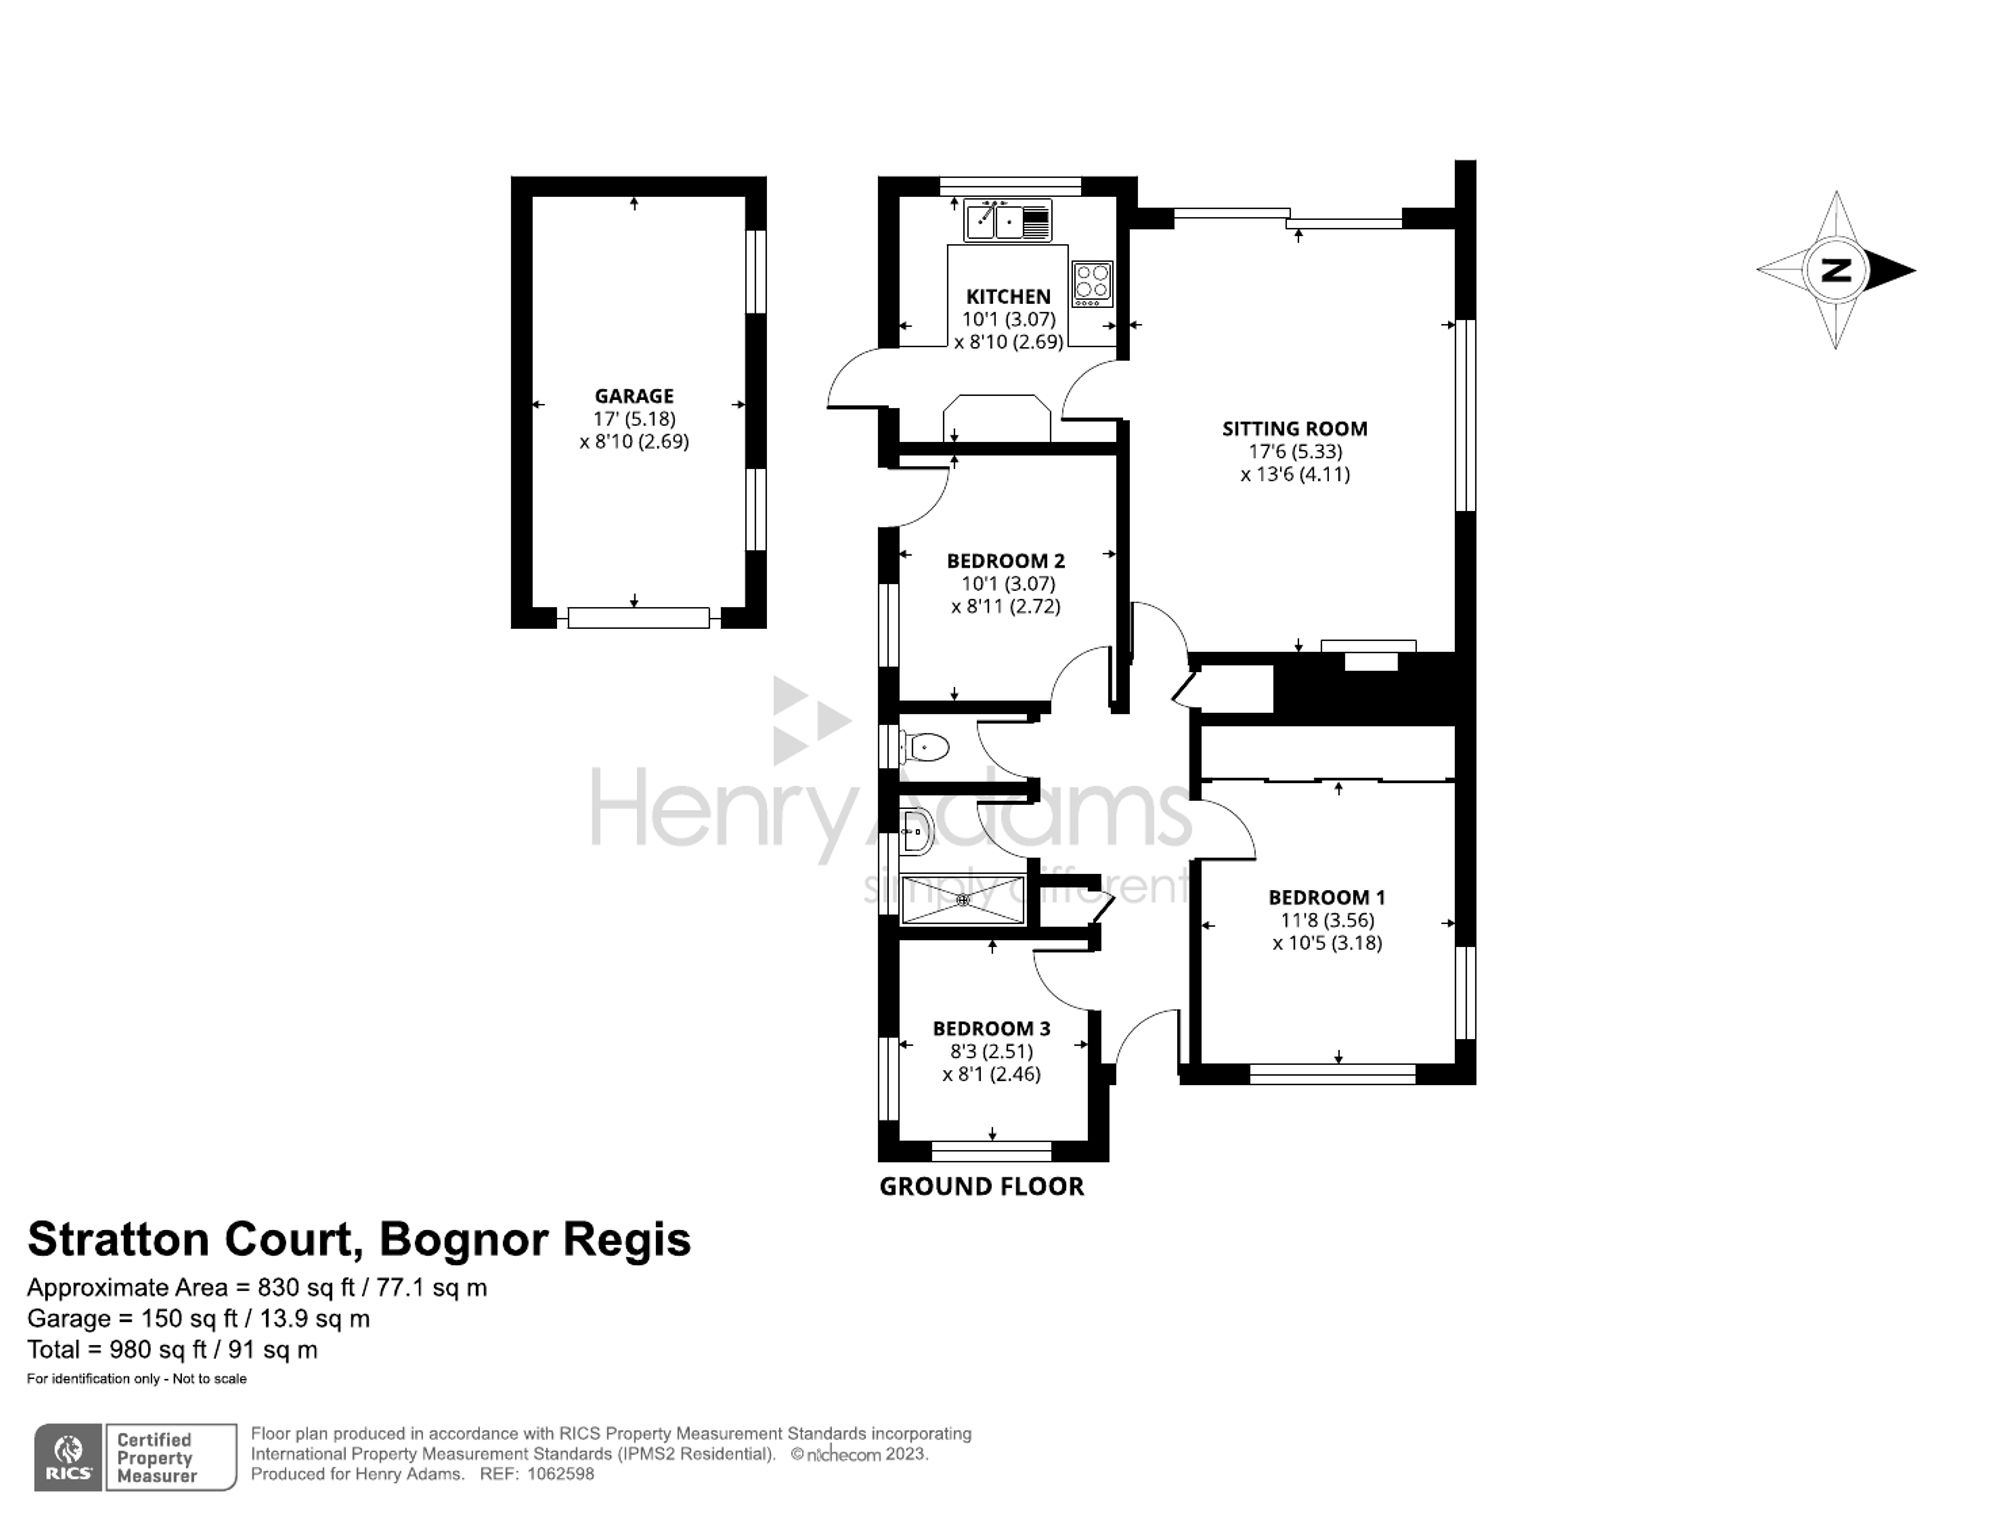 Stratton Court, Glenwood, Bognor Regis floorplans